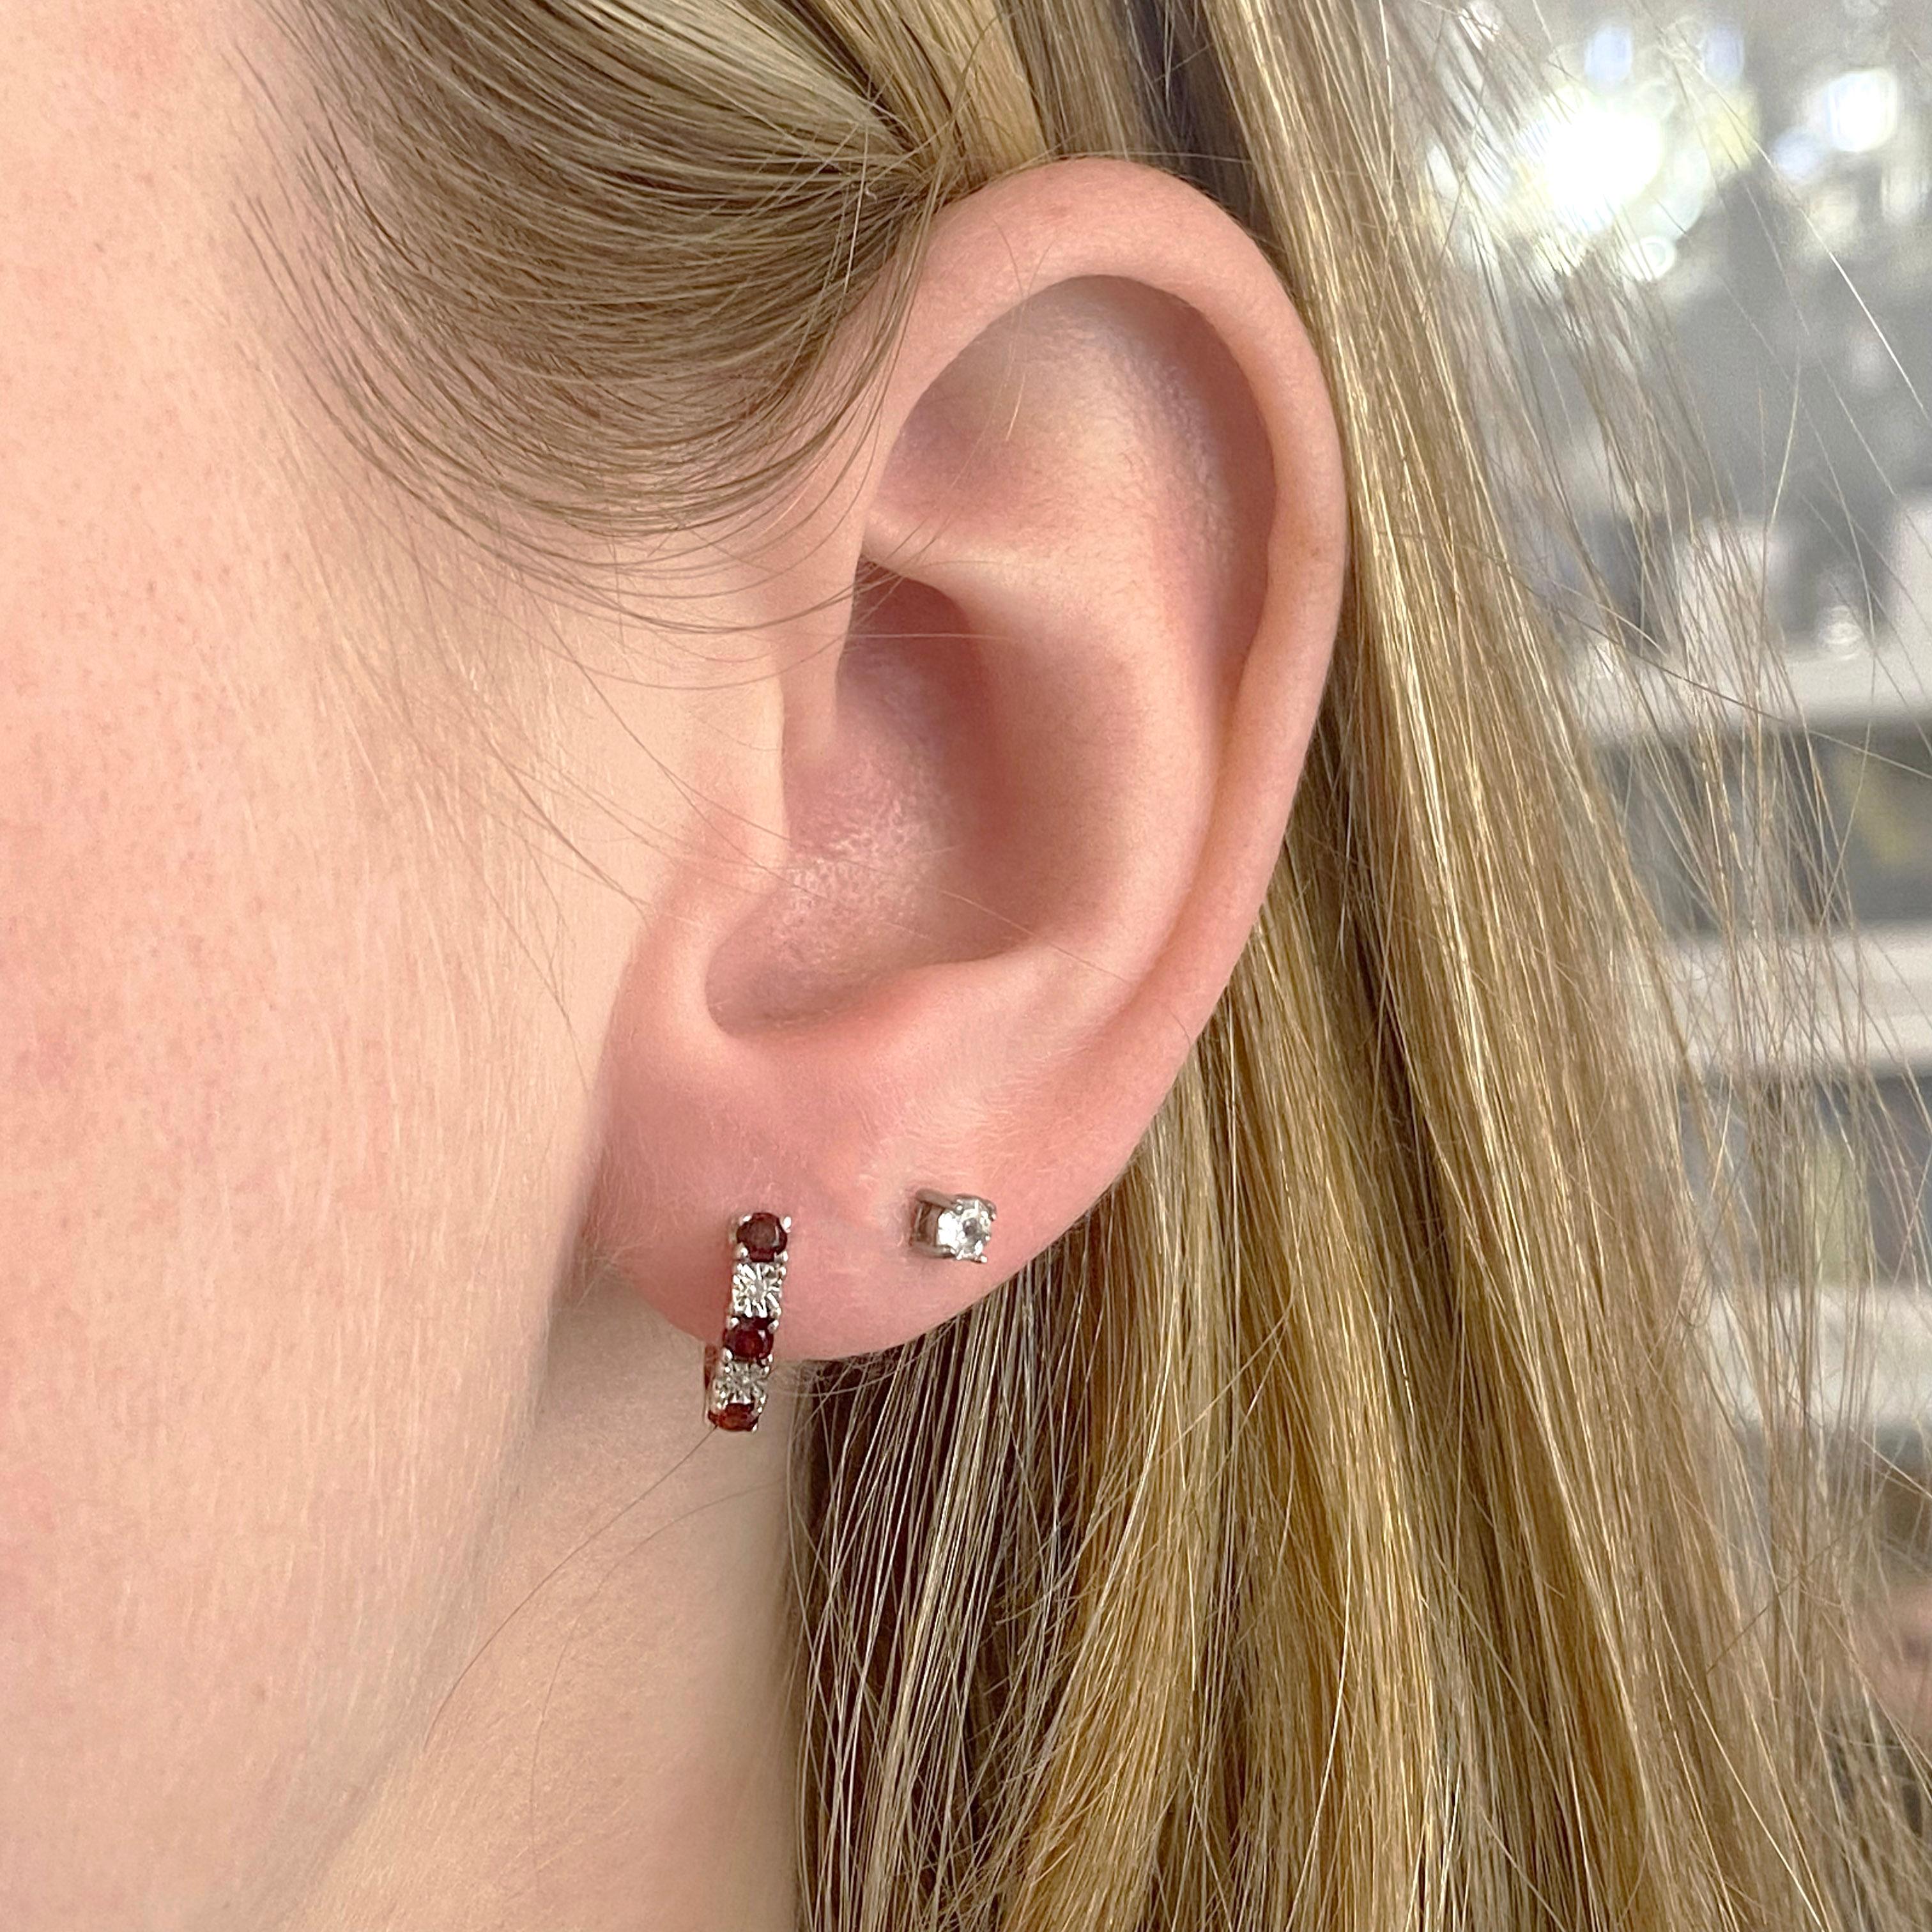 Earrings: 1 Set
Metal Quality: Sterling Silver With Rhodium Plating
Earring Type: Hoops/Huggies
Clasp Type: Hinge
Hoop DIameter: 12.32 millimeters
Earring Width: 3.02 millimeters 
Diamond Number: 2
Diamond Shape: Round
Diamond Diameter: 1.02